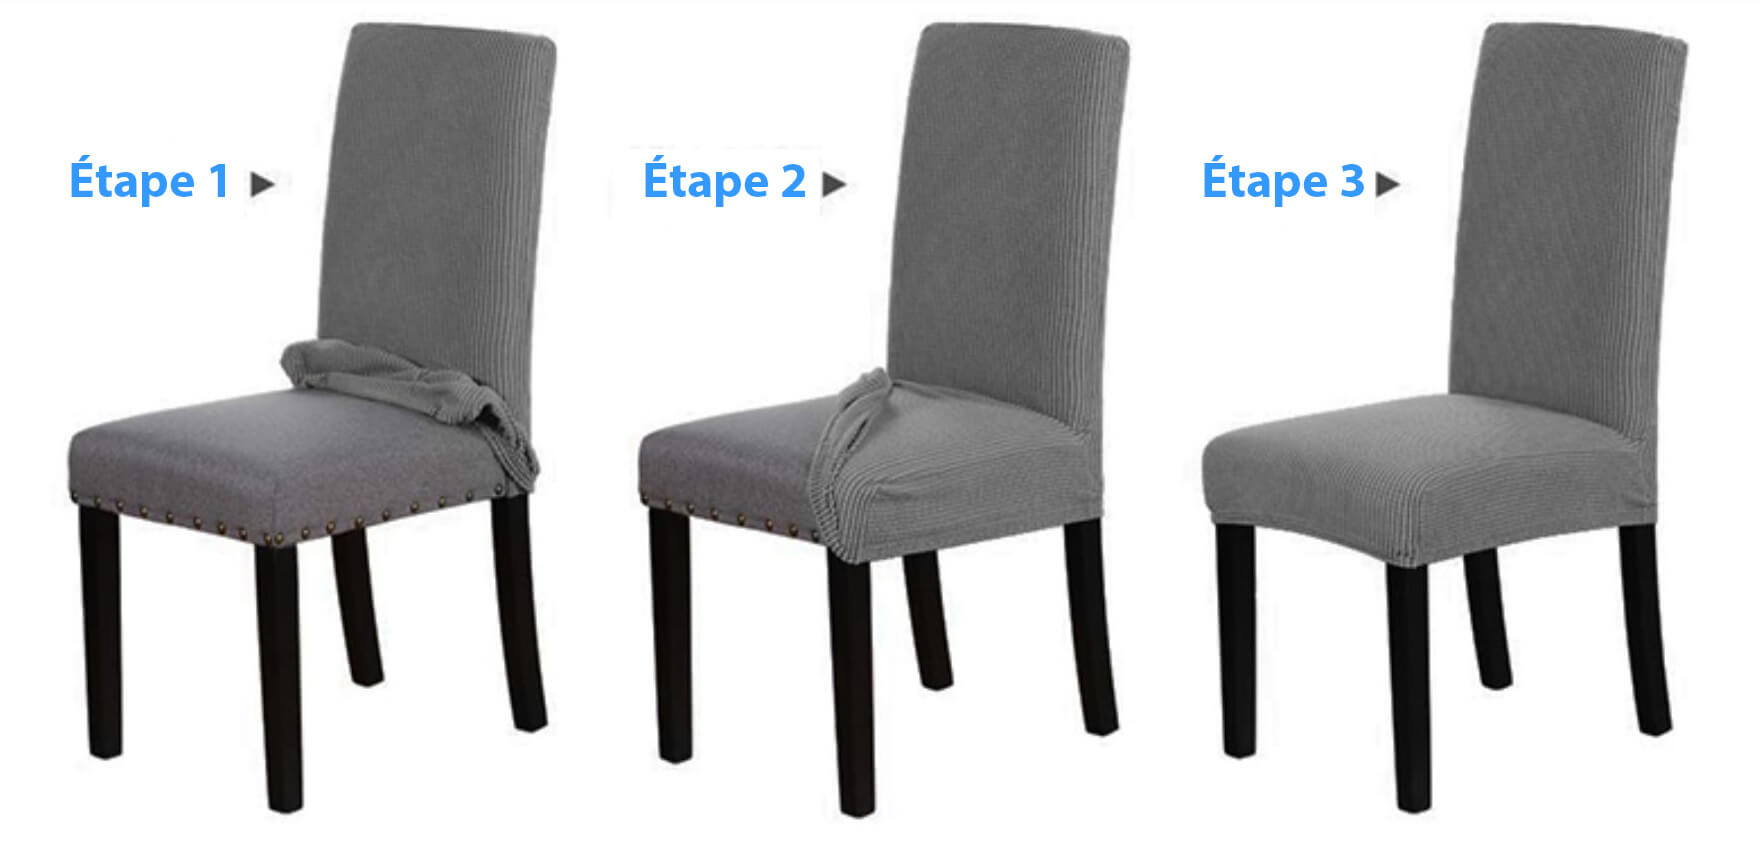 Comment installer ma housse de chaise impermeable ? Instructions par etapes et guide pour l'installation